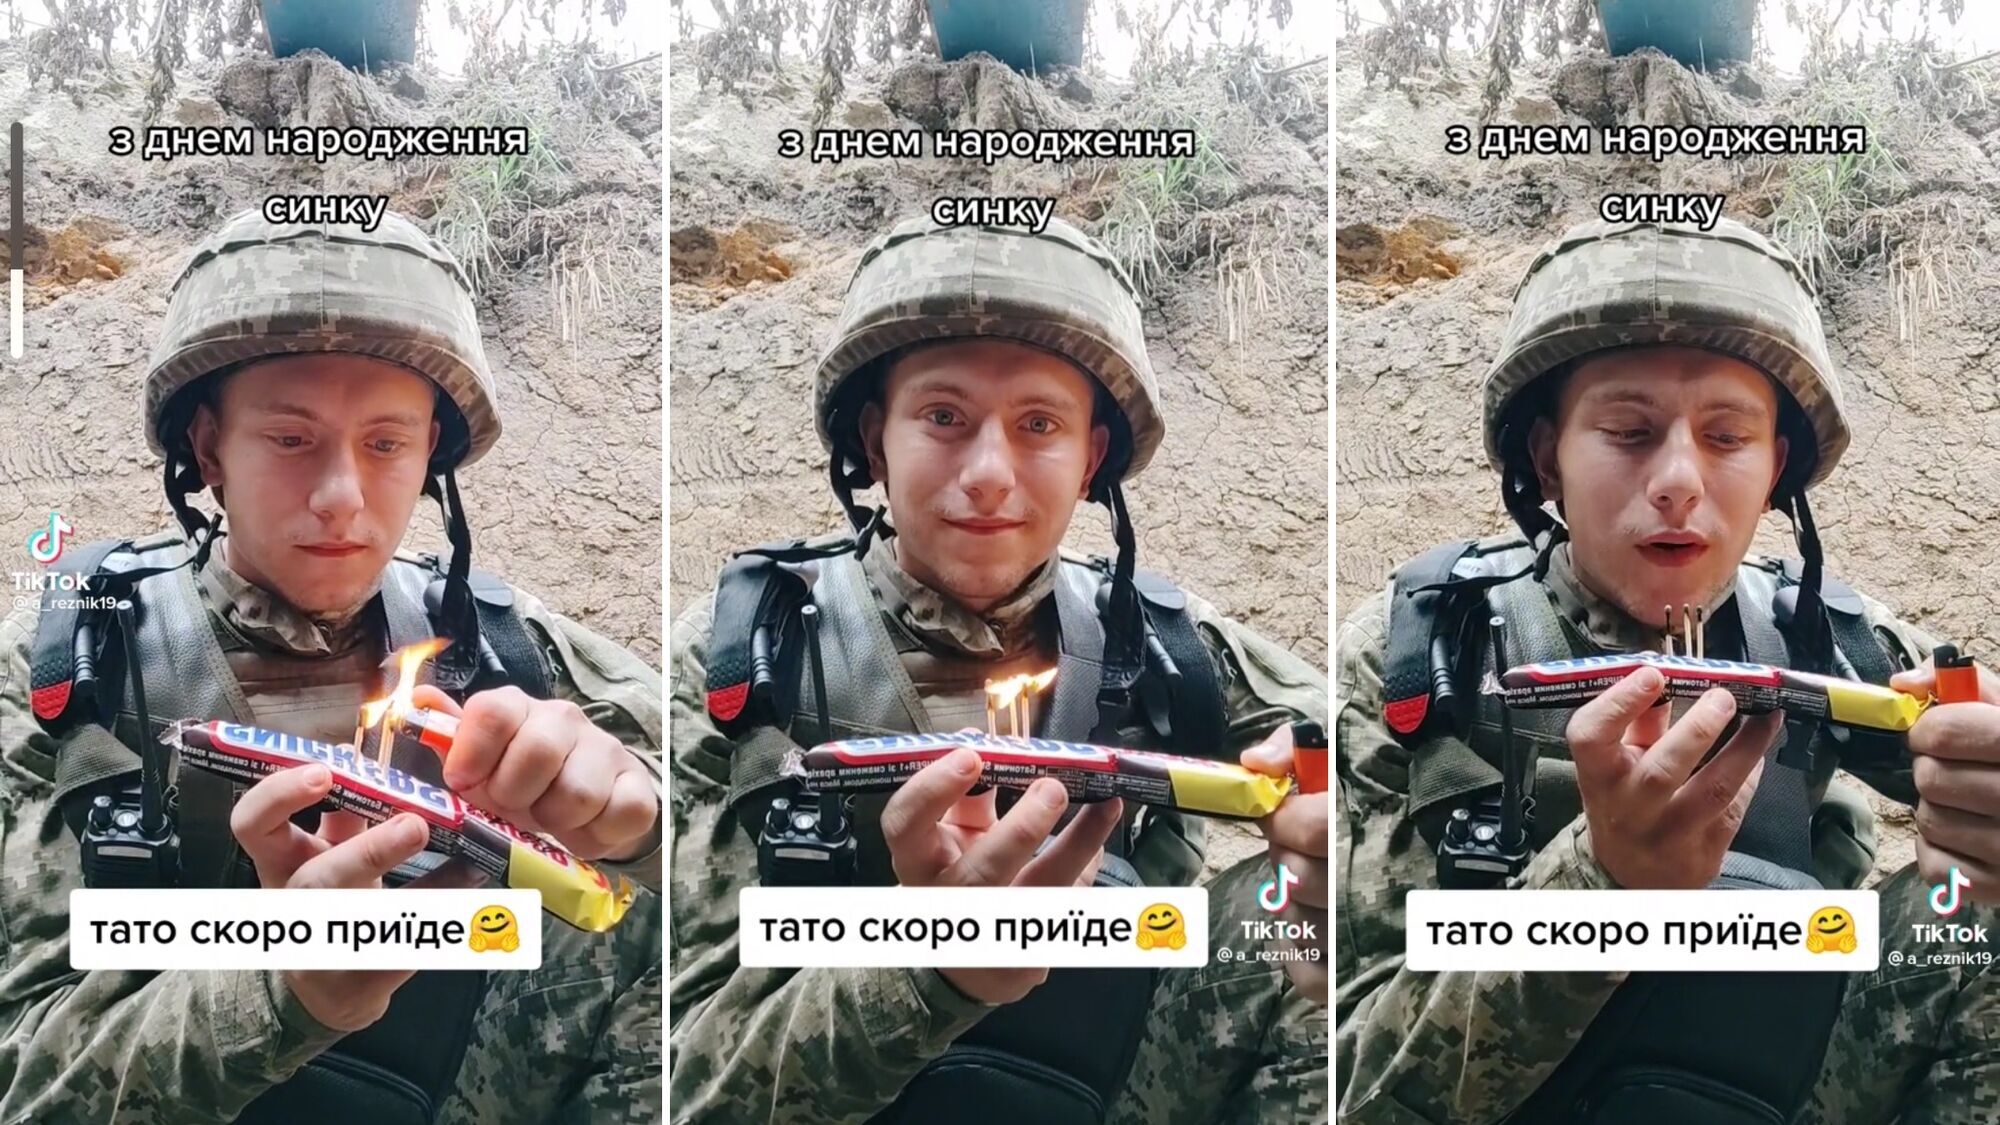 "Тато скоро приїде": відео українського воїна, який вітає сина з днем народження з фронту, зворушило мережу до сліз